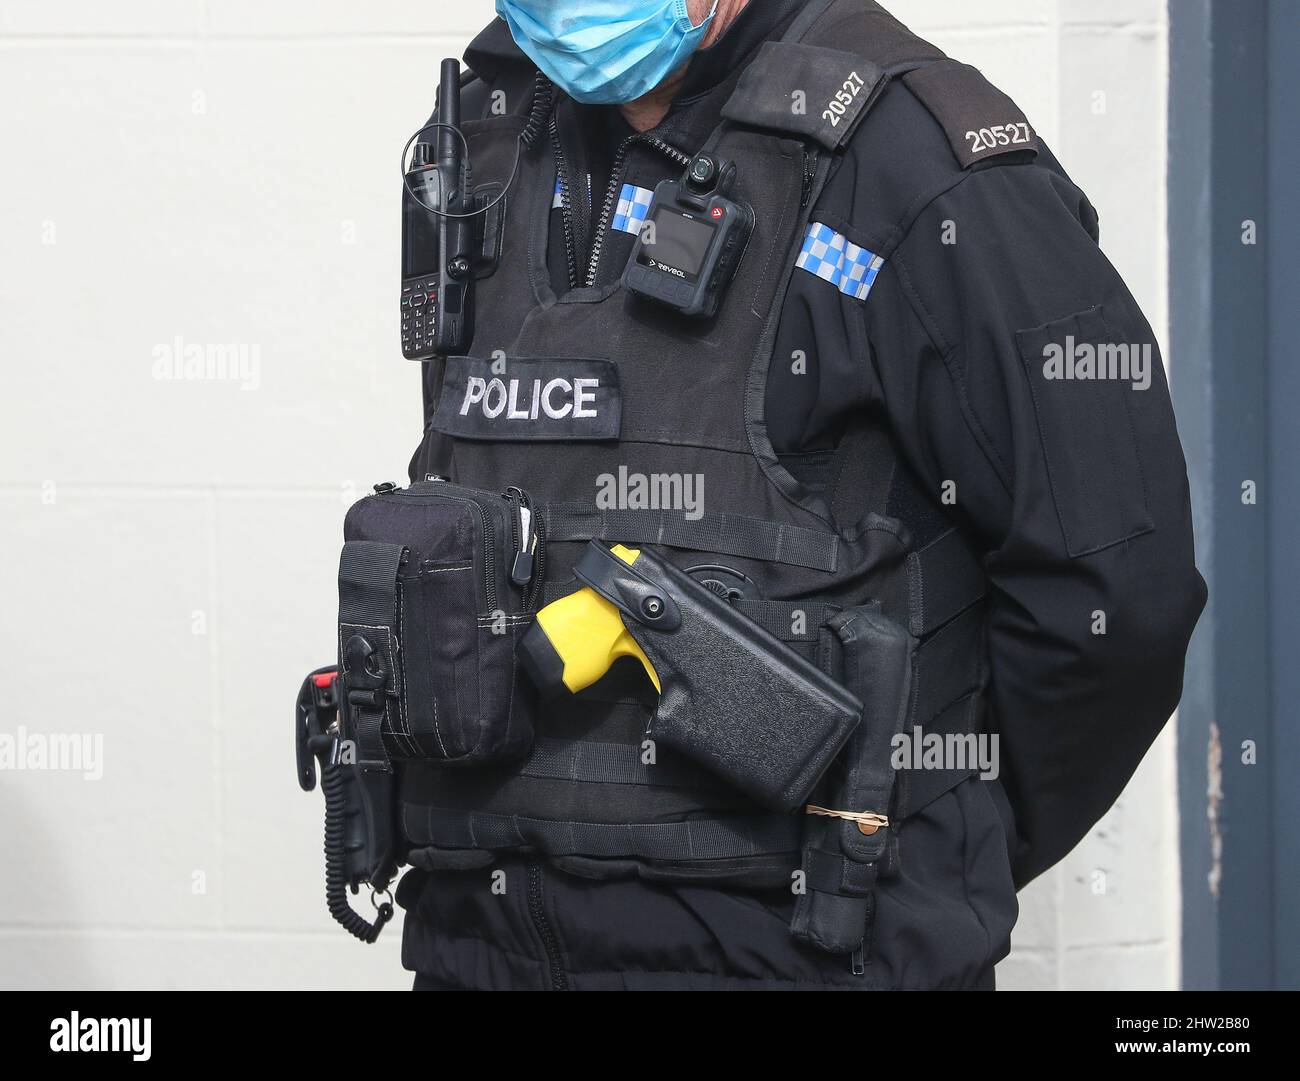 Ufficiale di polizia del Regno Unito che indossa un giubbotto tattico, tra cui una pistola da tazer e una macchina fotografica per il corpo. Foto Stock